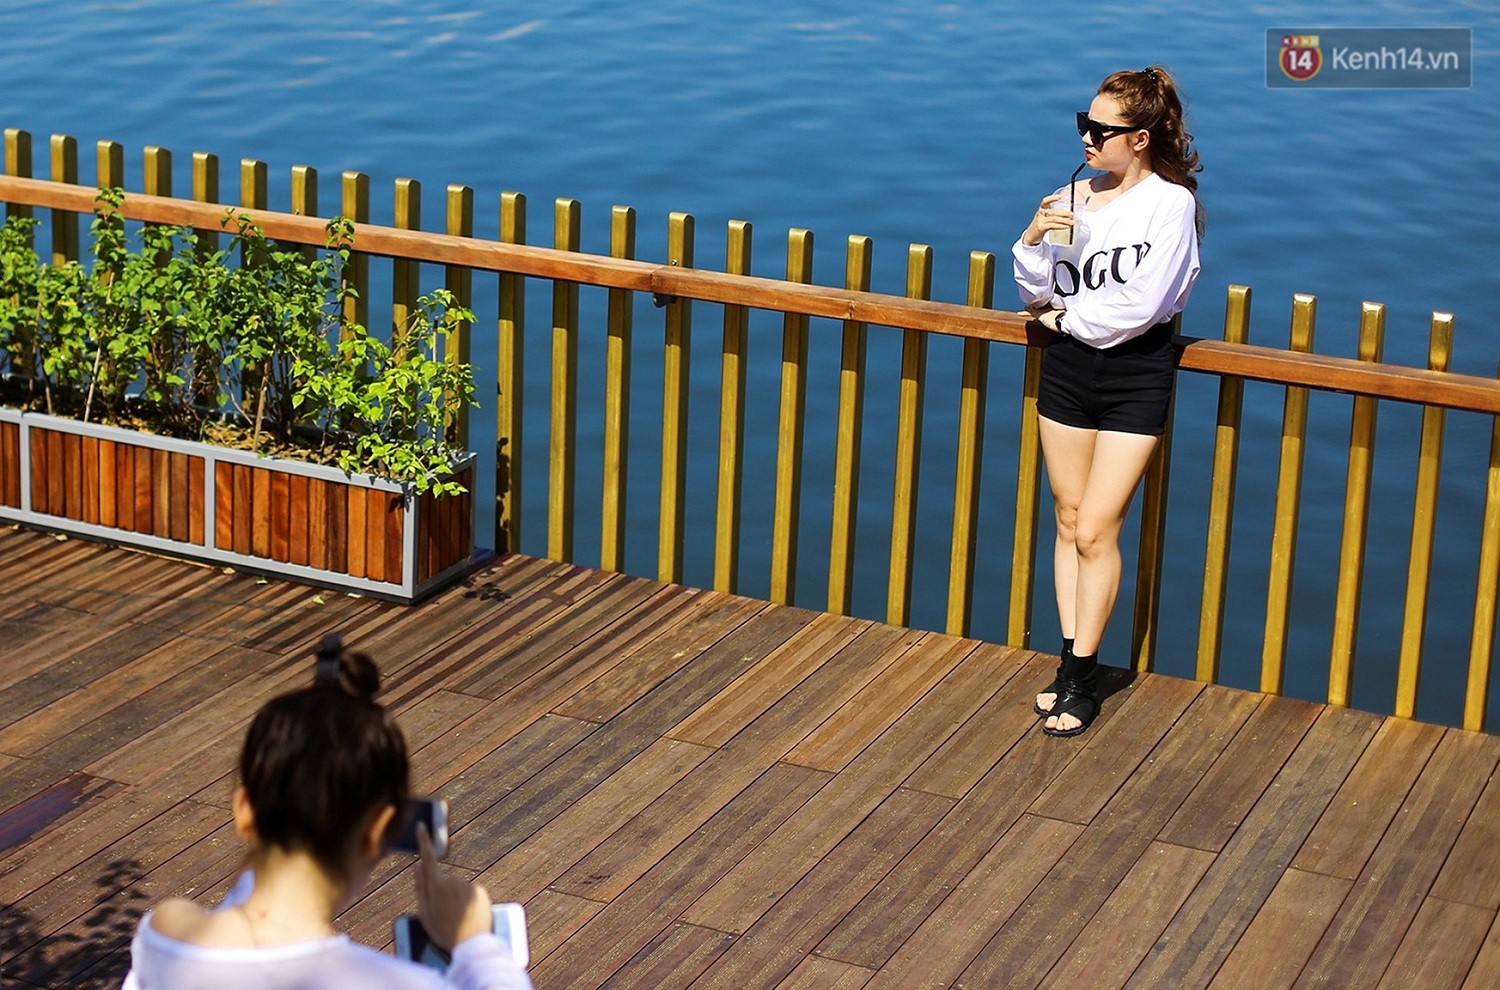 Cầu đi bộ lát gỗ lim 64 tỷ trên sông Hương trở thành địa điểm hot nhất ở Huế dù chưa khánh thành - Ảnh 15.